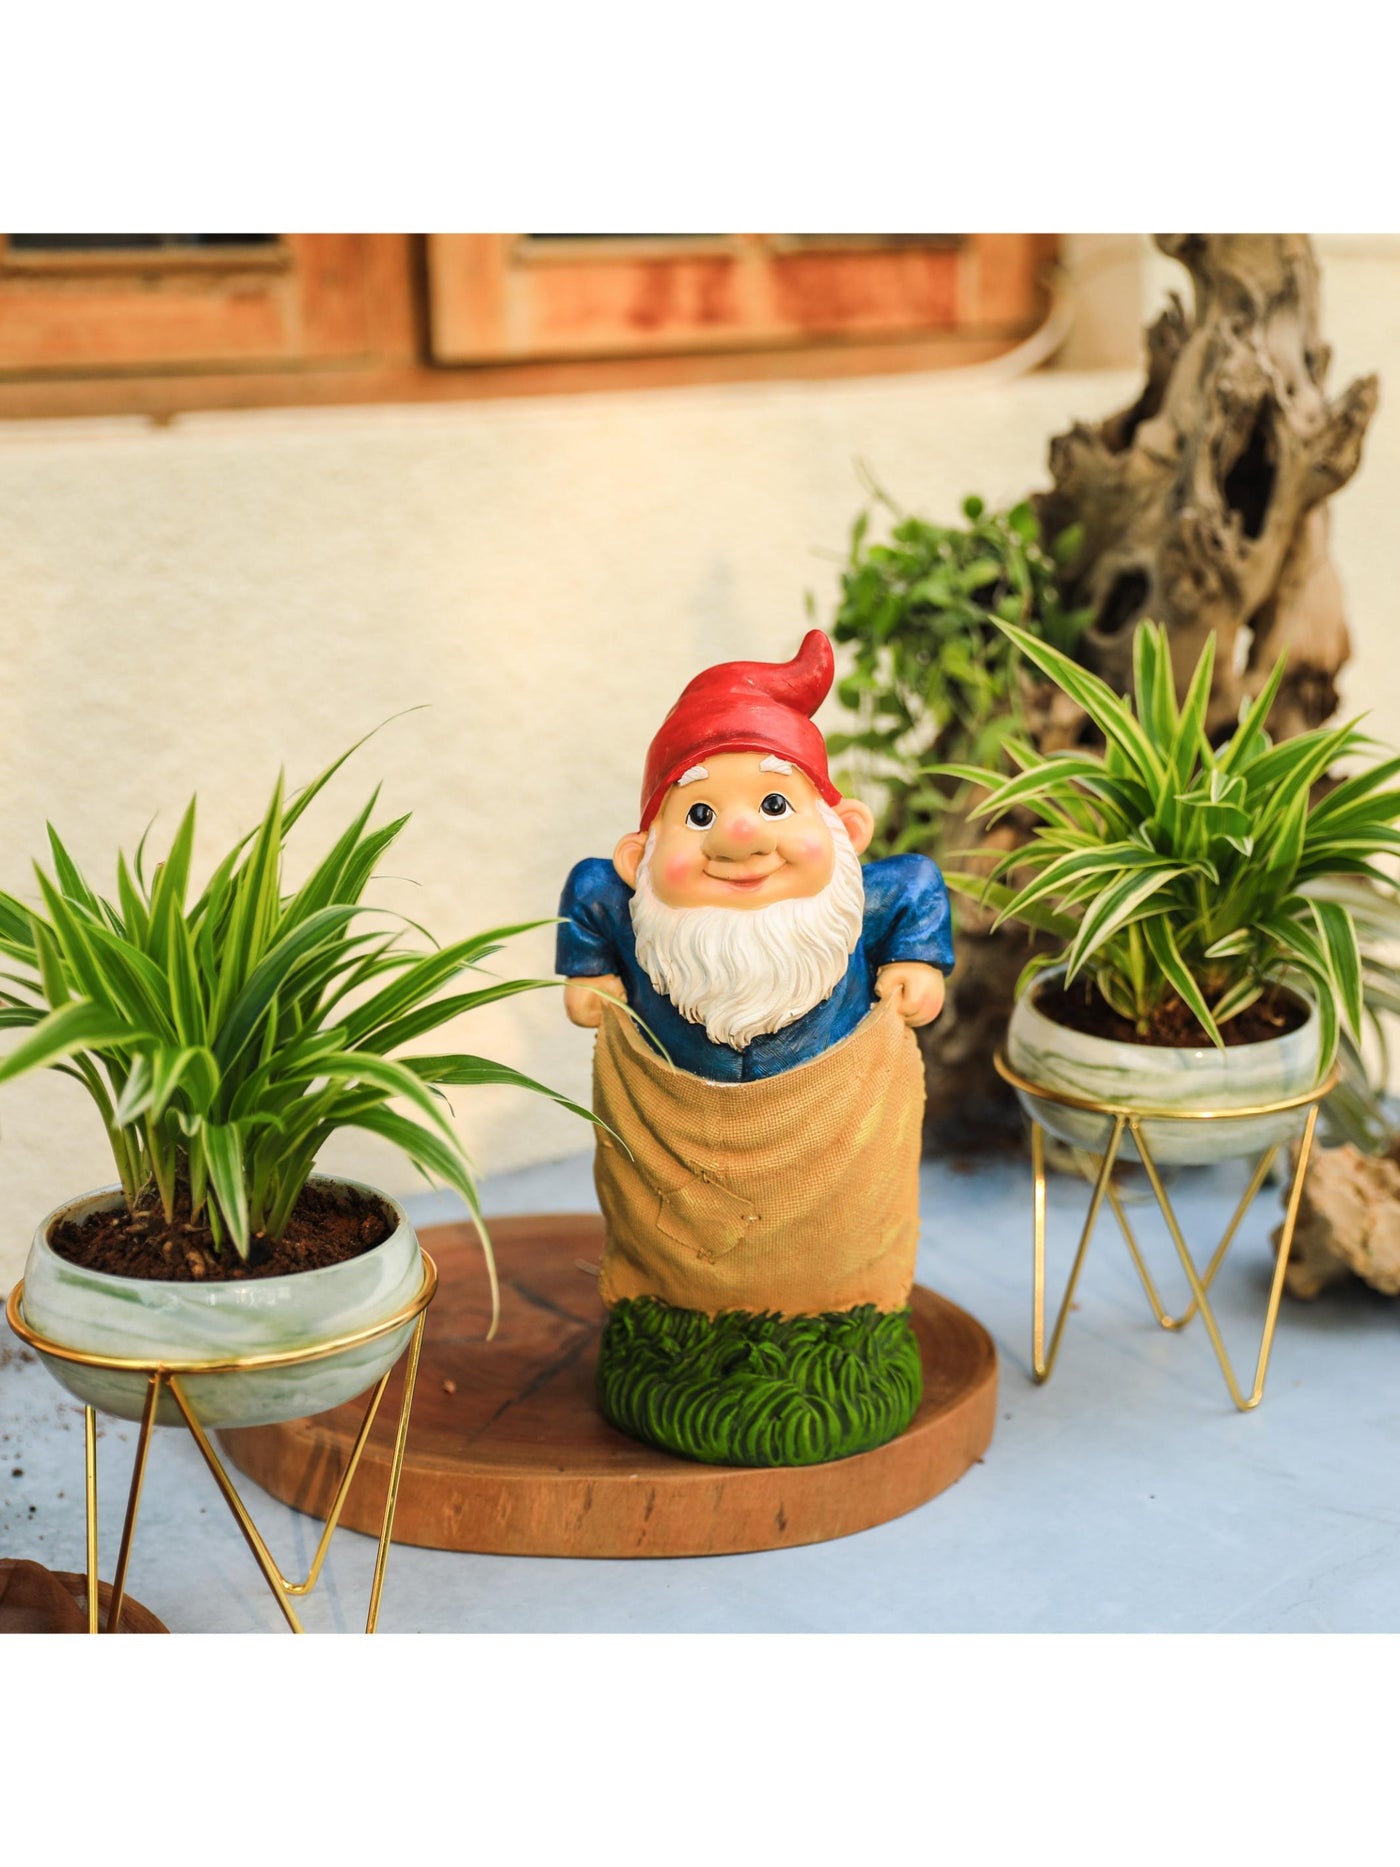 Garden Decor - Gnome in a Sack Race